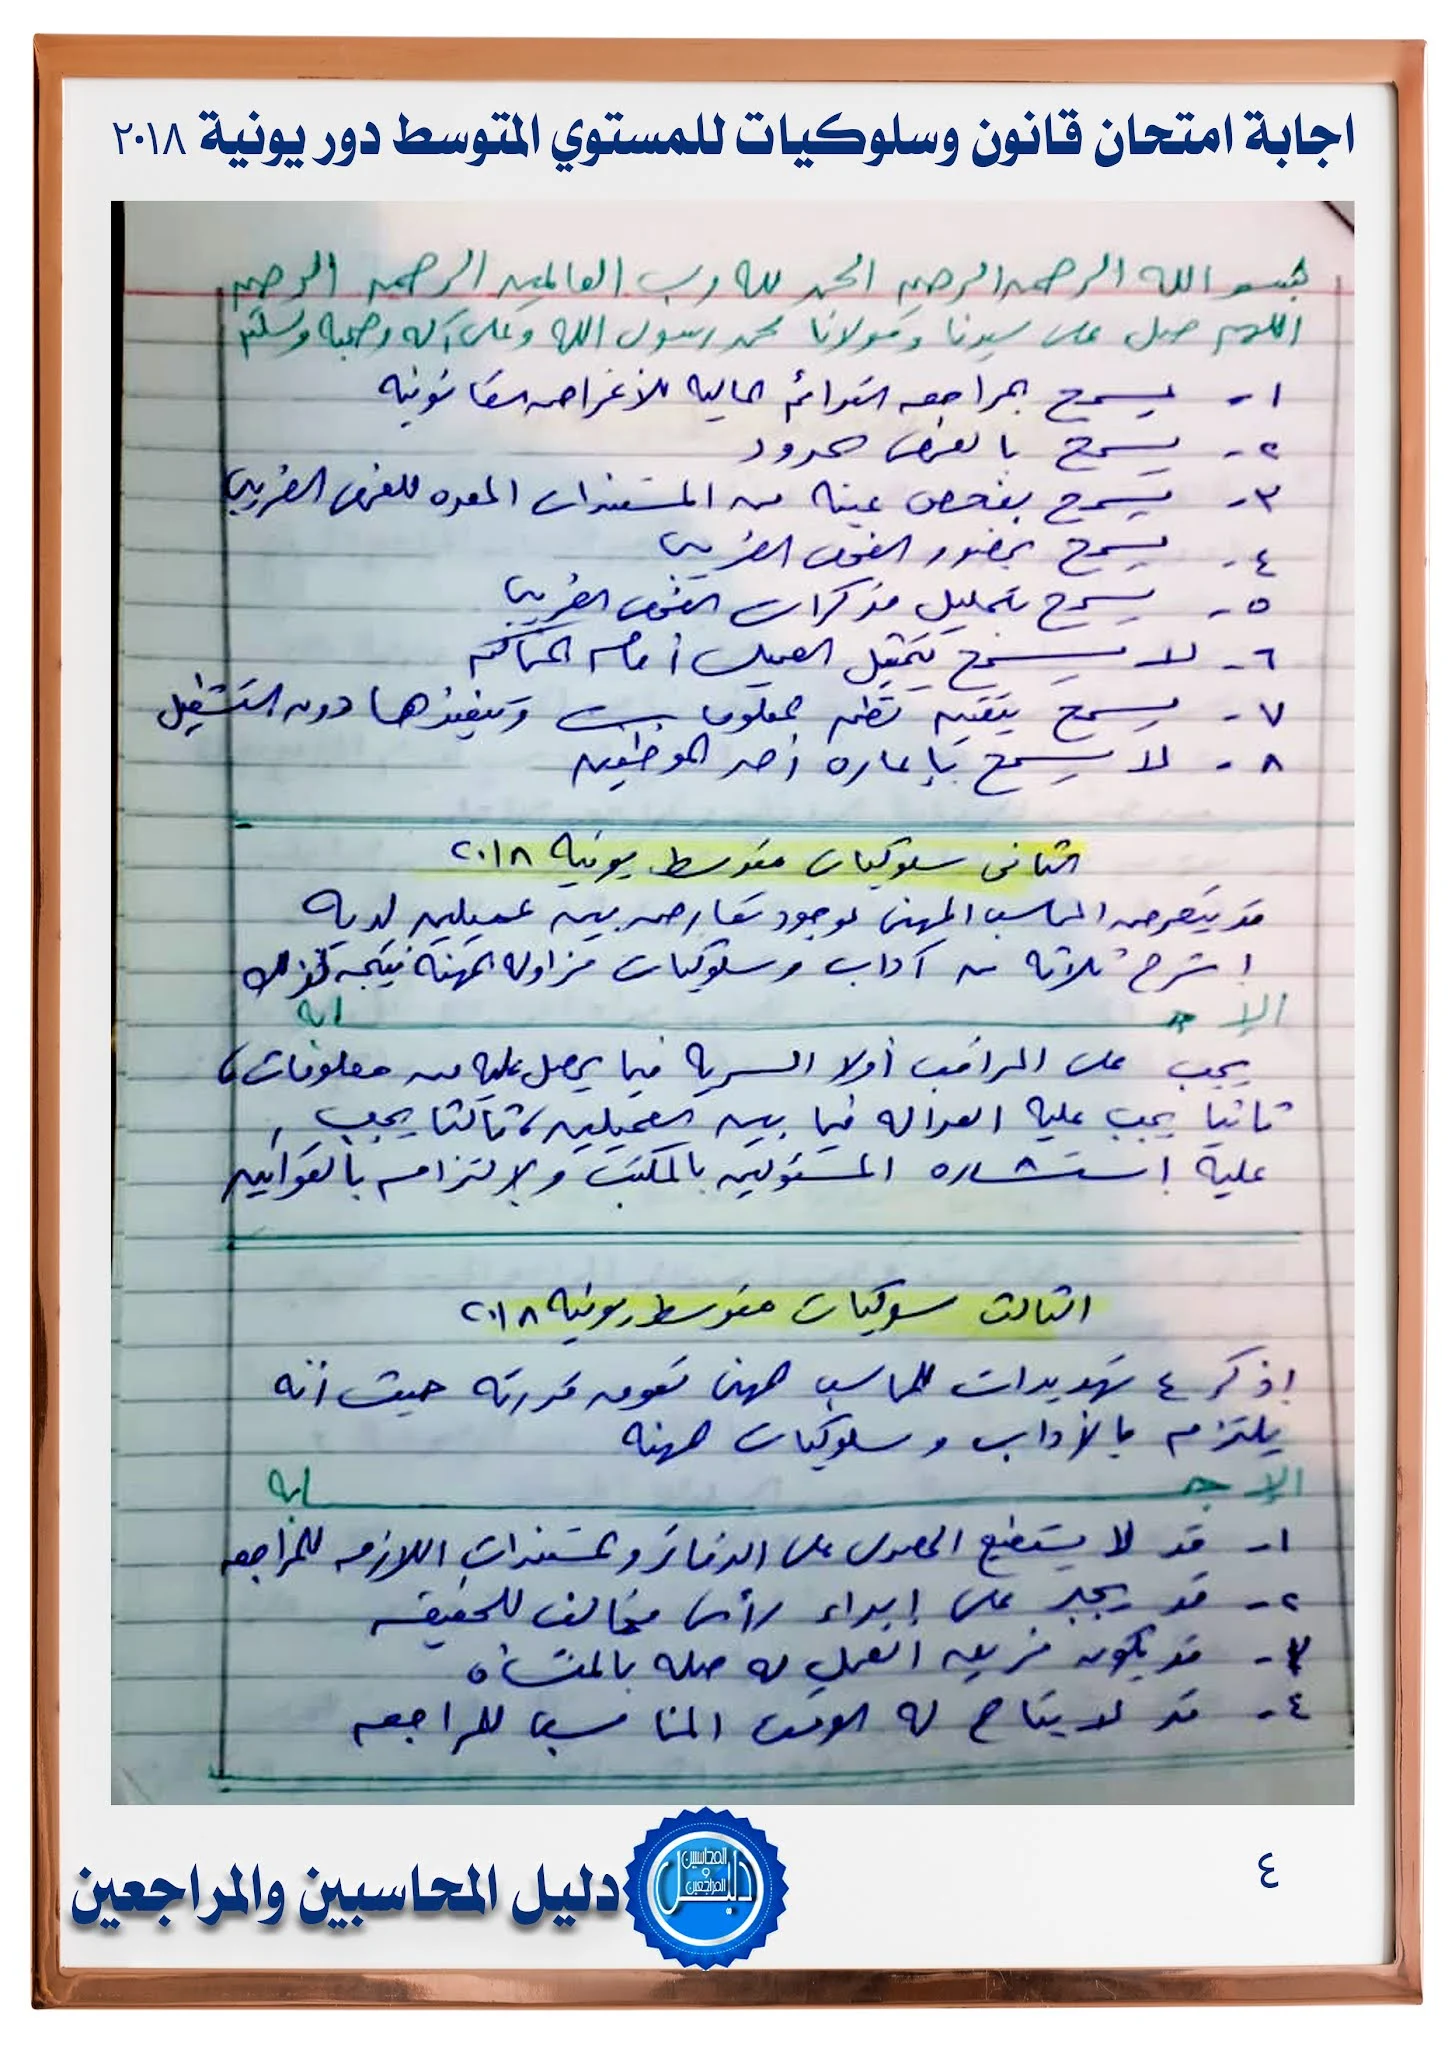 اجابة امتحان قانون وسلوكيات للمستوي المتوسط  يونيو 2018 جمعية المحاسبين والمراجعين المصرية